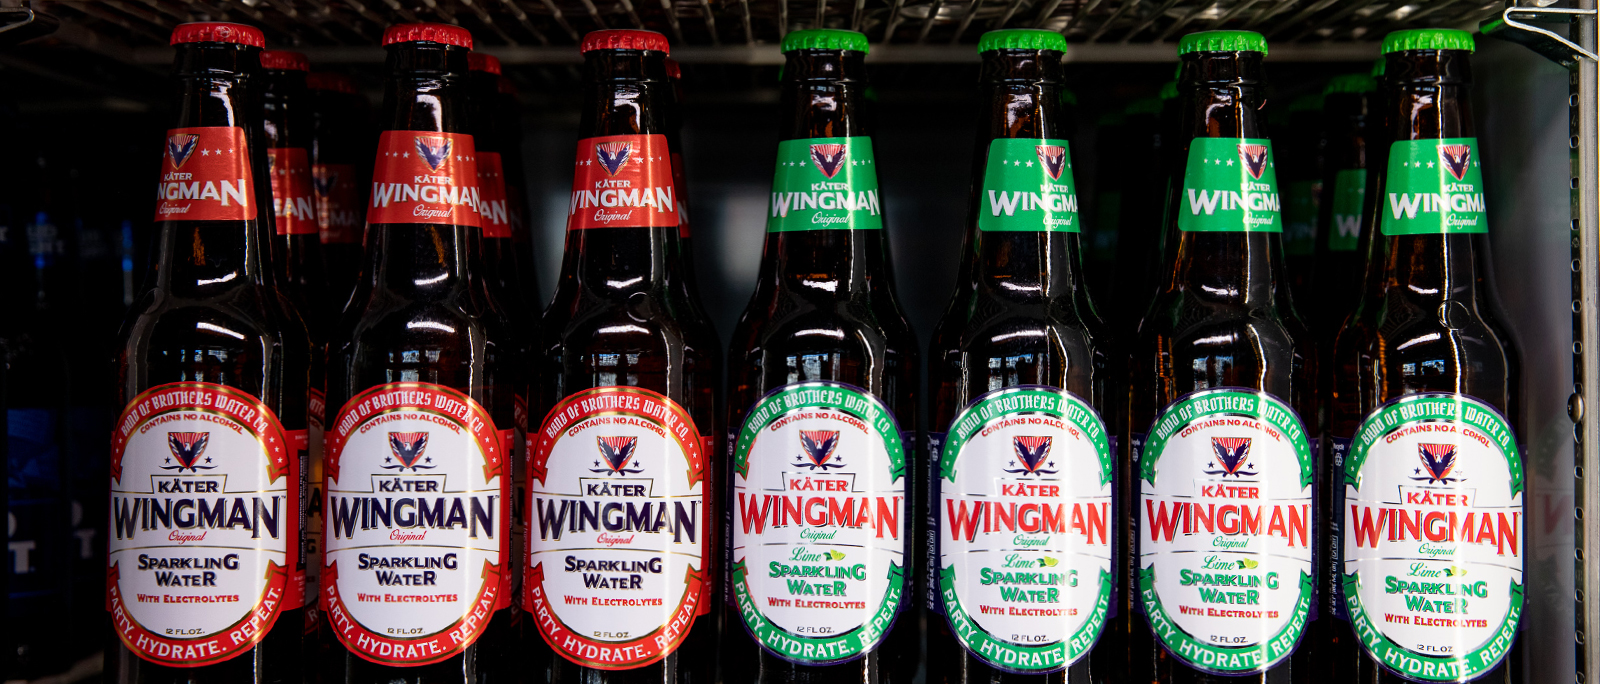 Wingman Bottles in Cooler